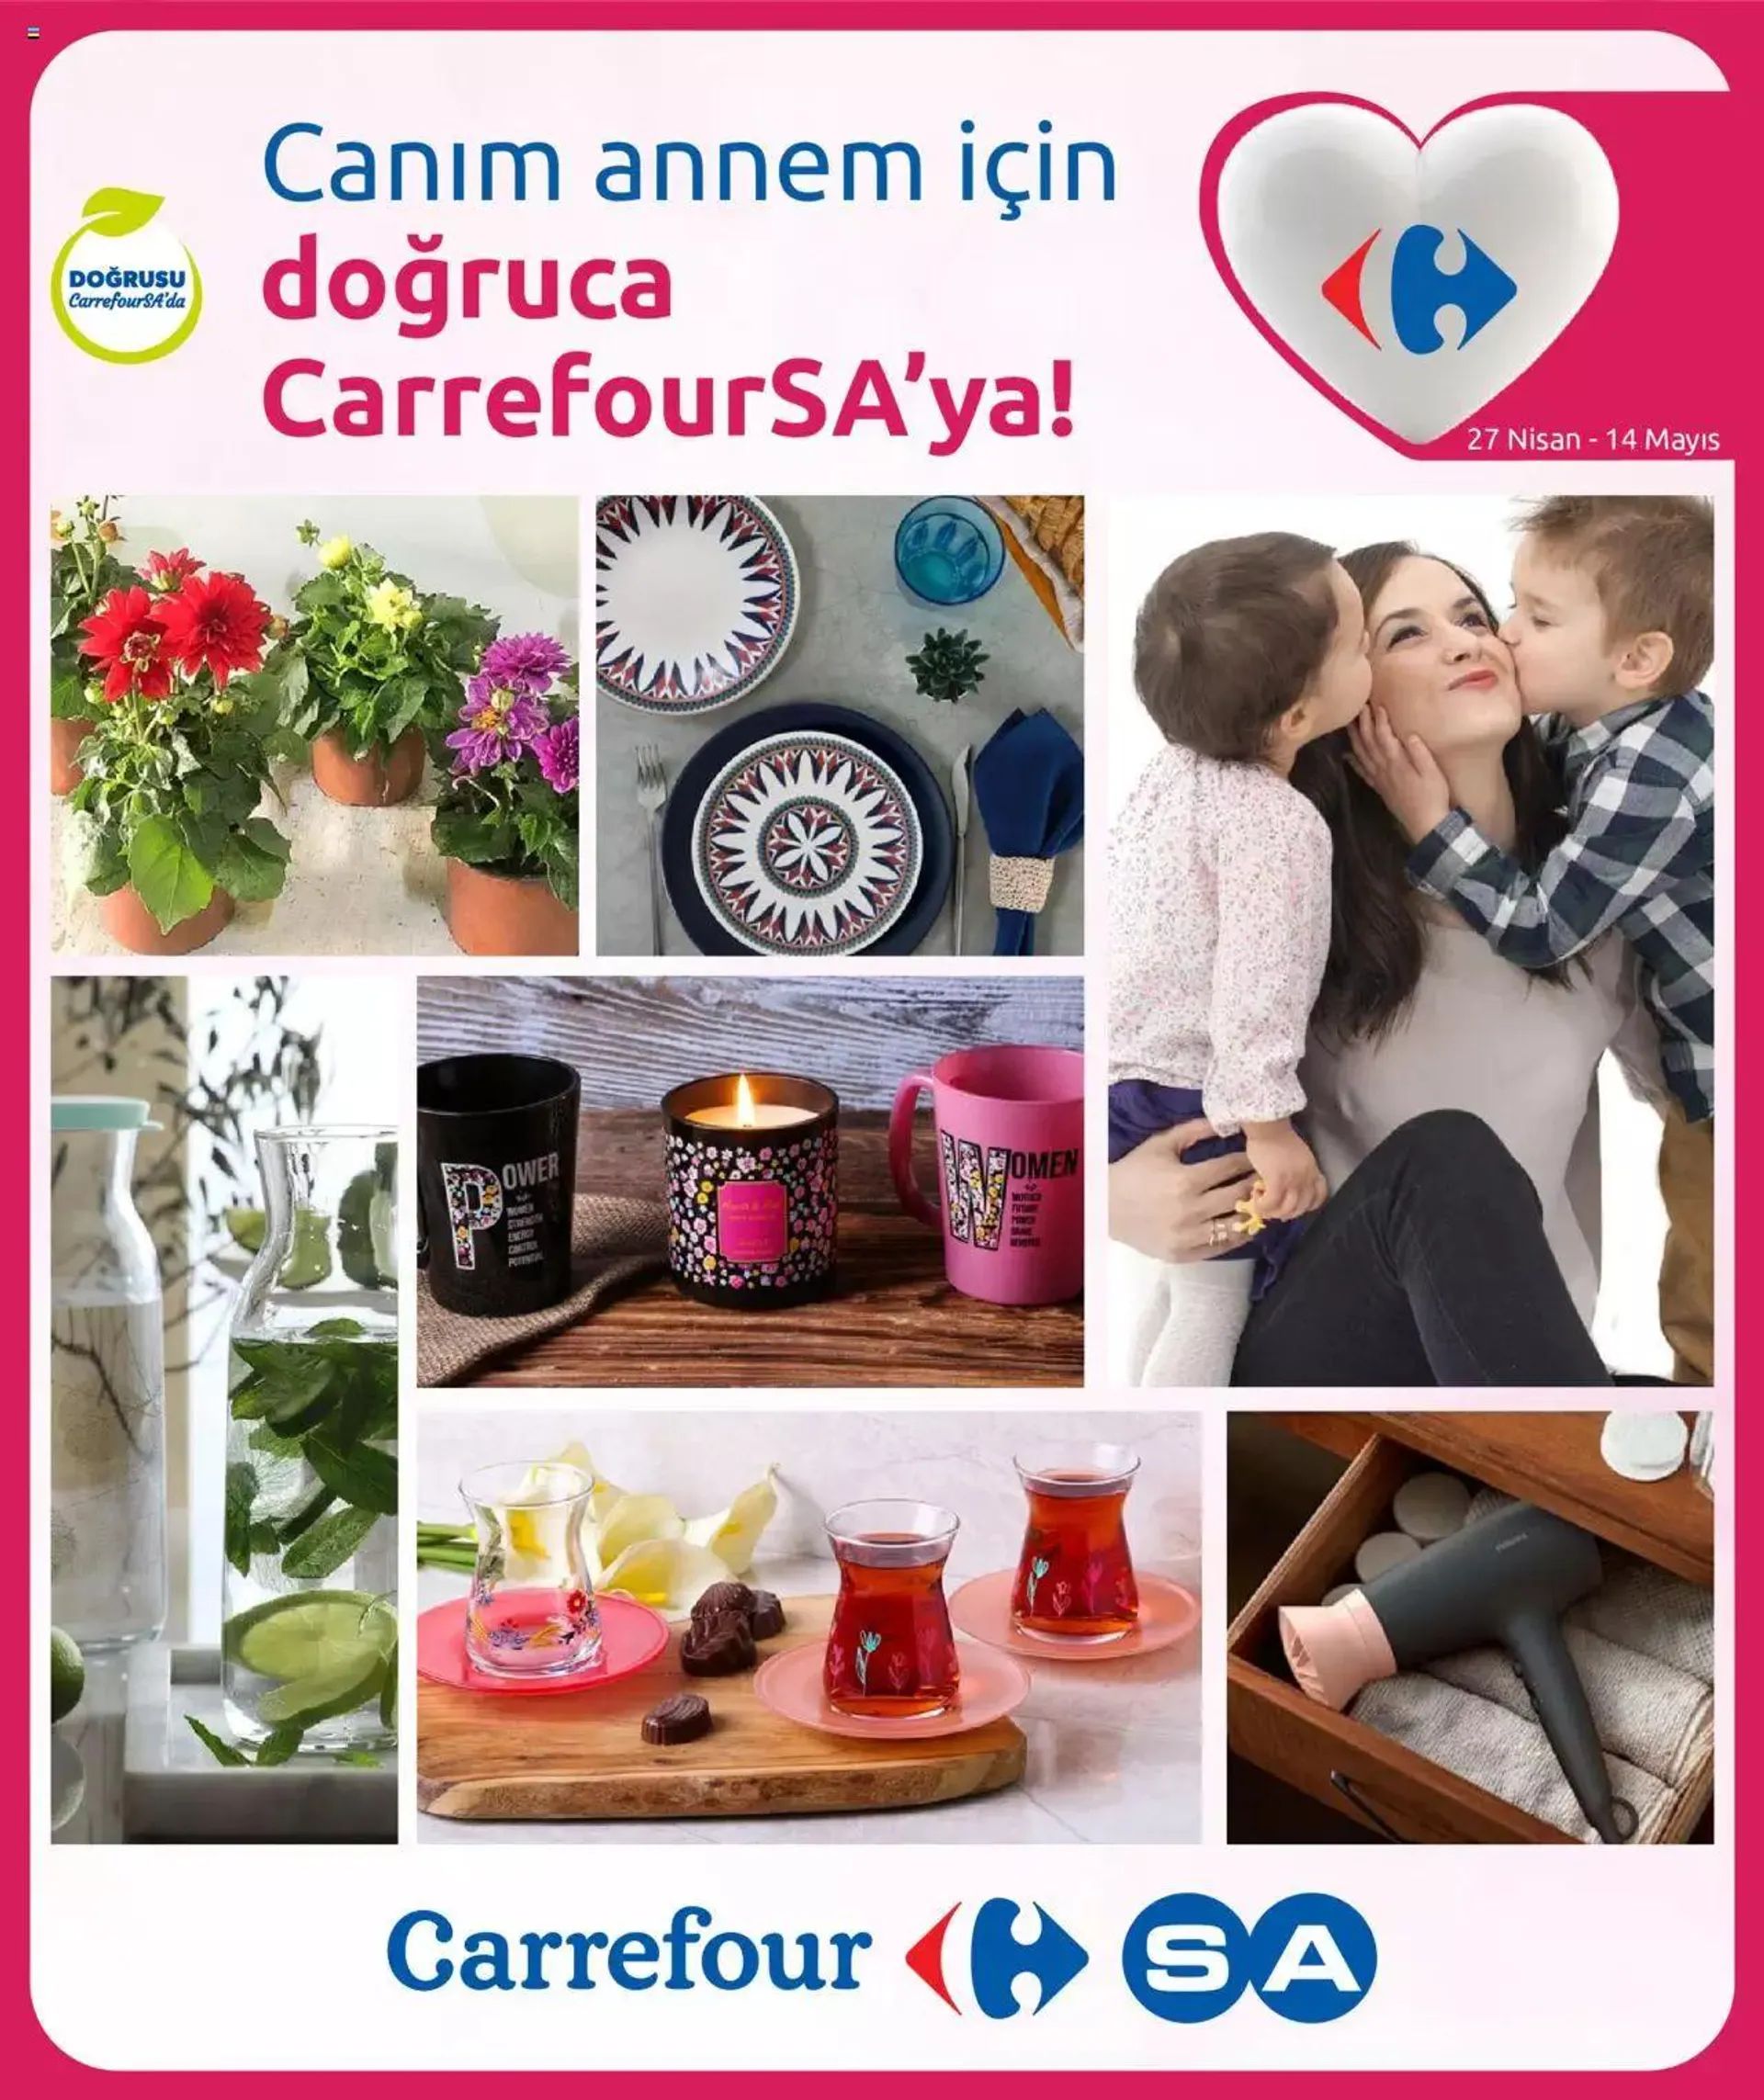 CarrefourSA Katalog - Canım annem için - 0